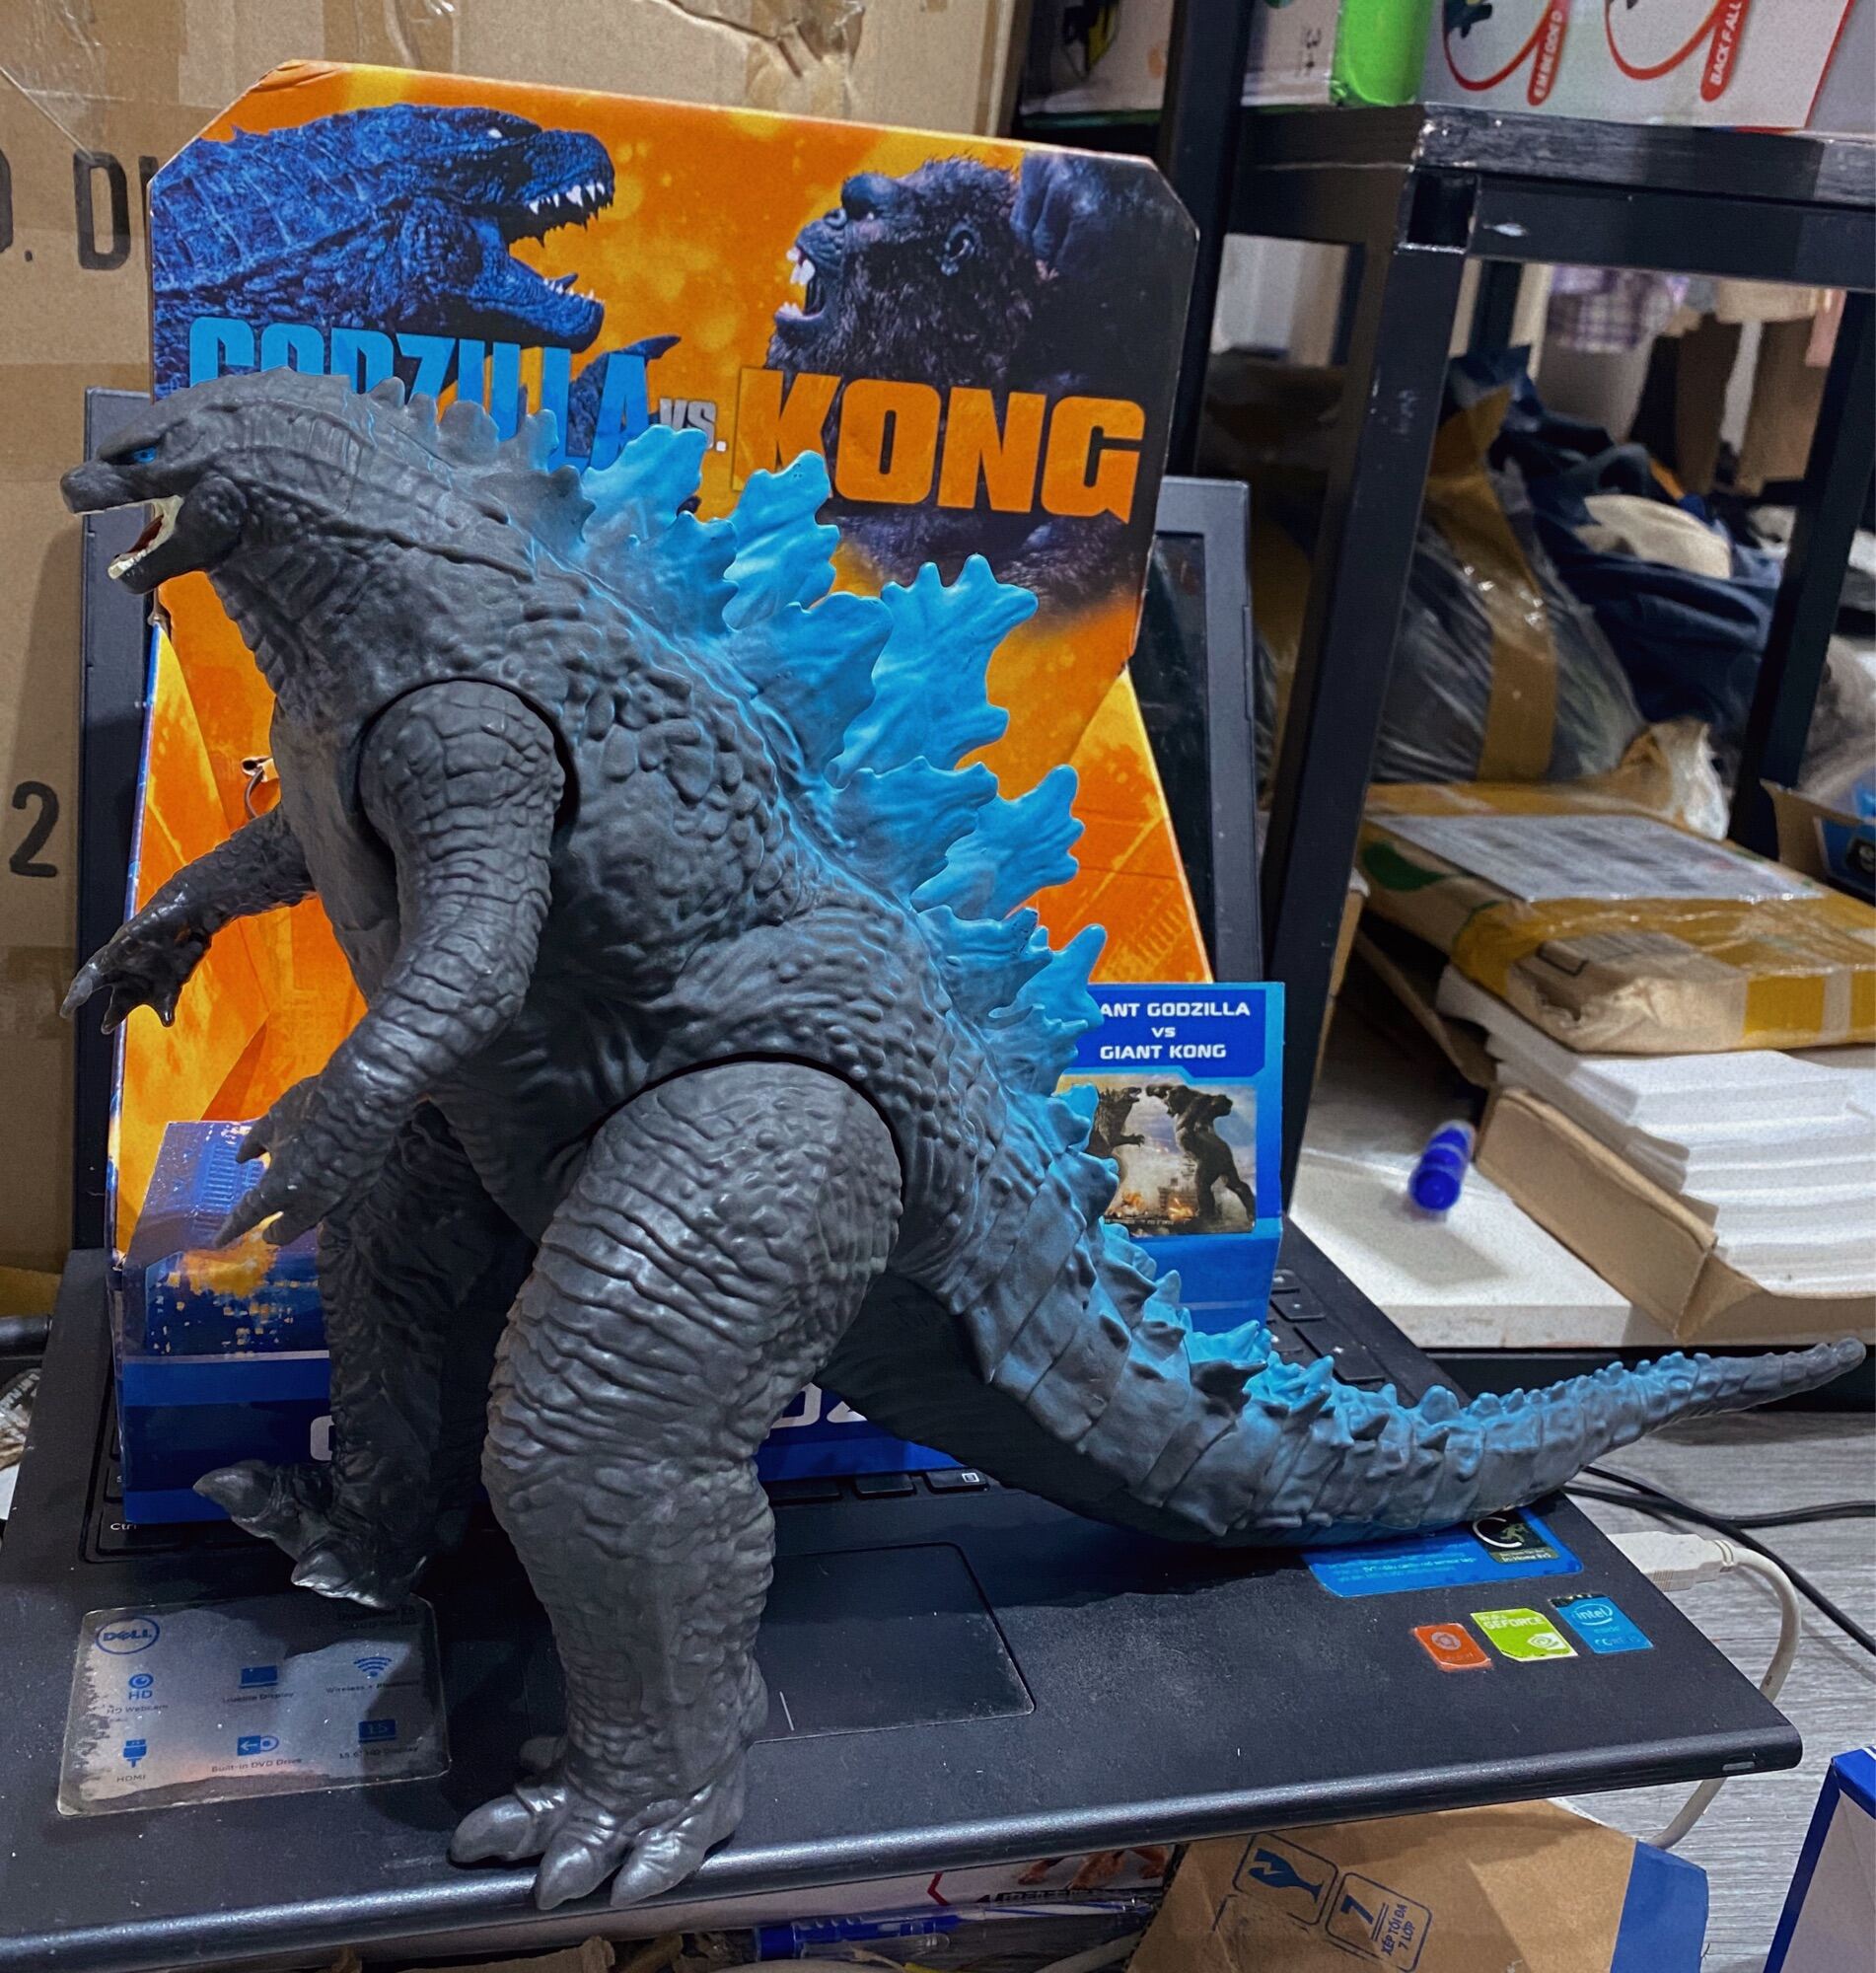 Bán Mô hình Godzilla 2019  Godzilla King of the Monsters RỖNG RUỘT giá rẻ  bất ngờ  Review ZimKen